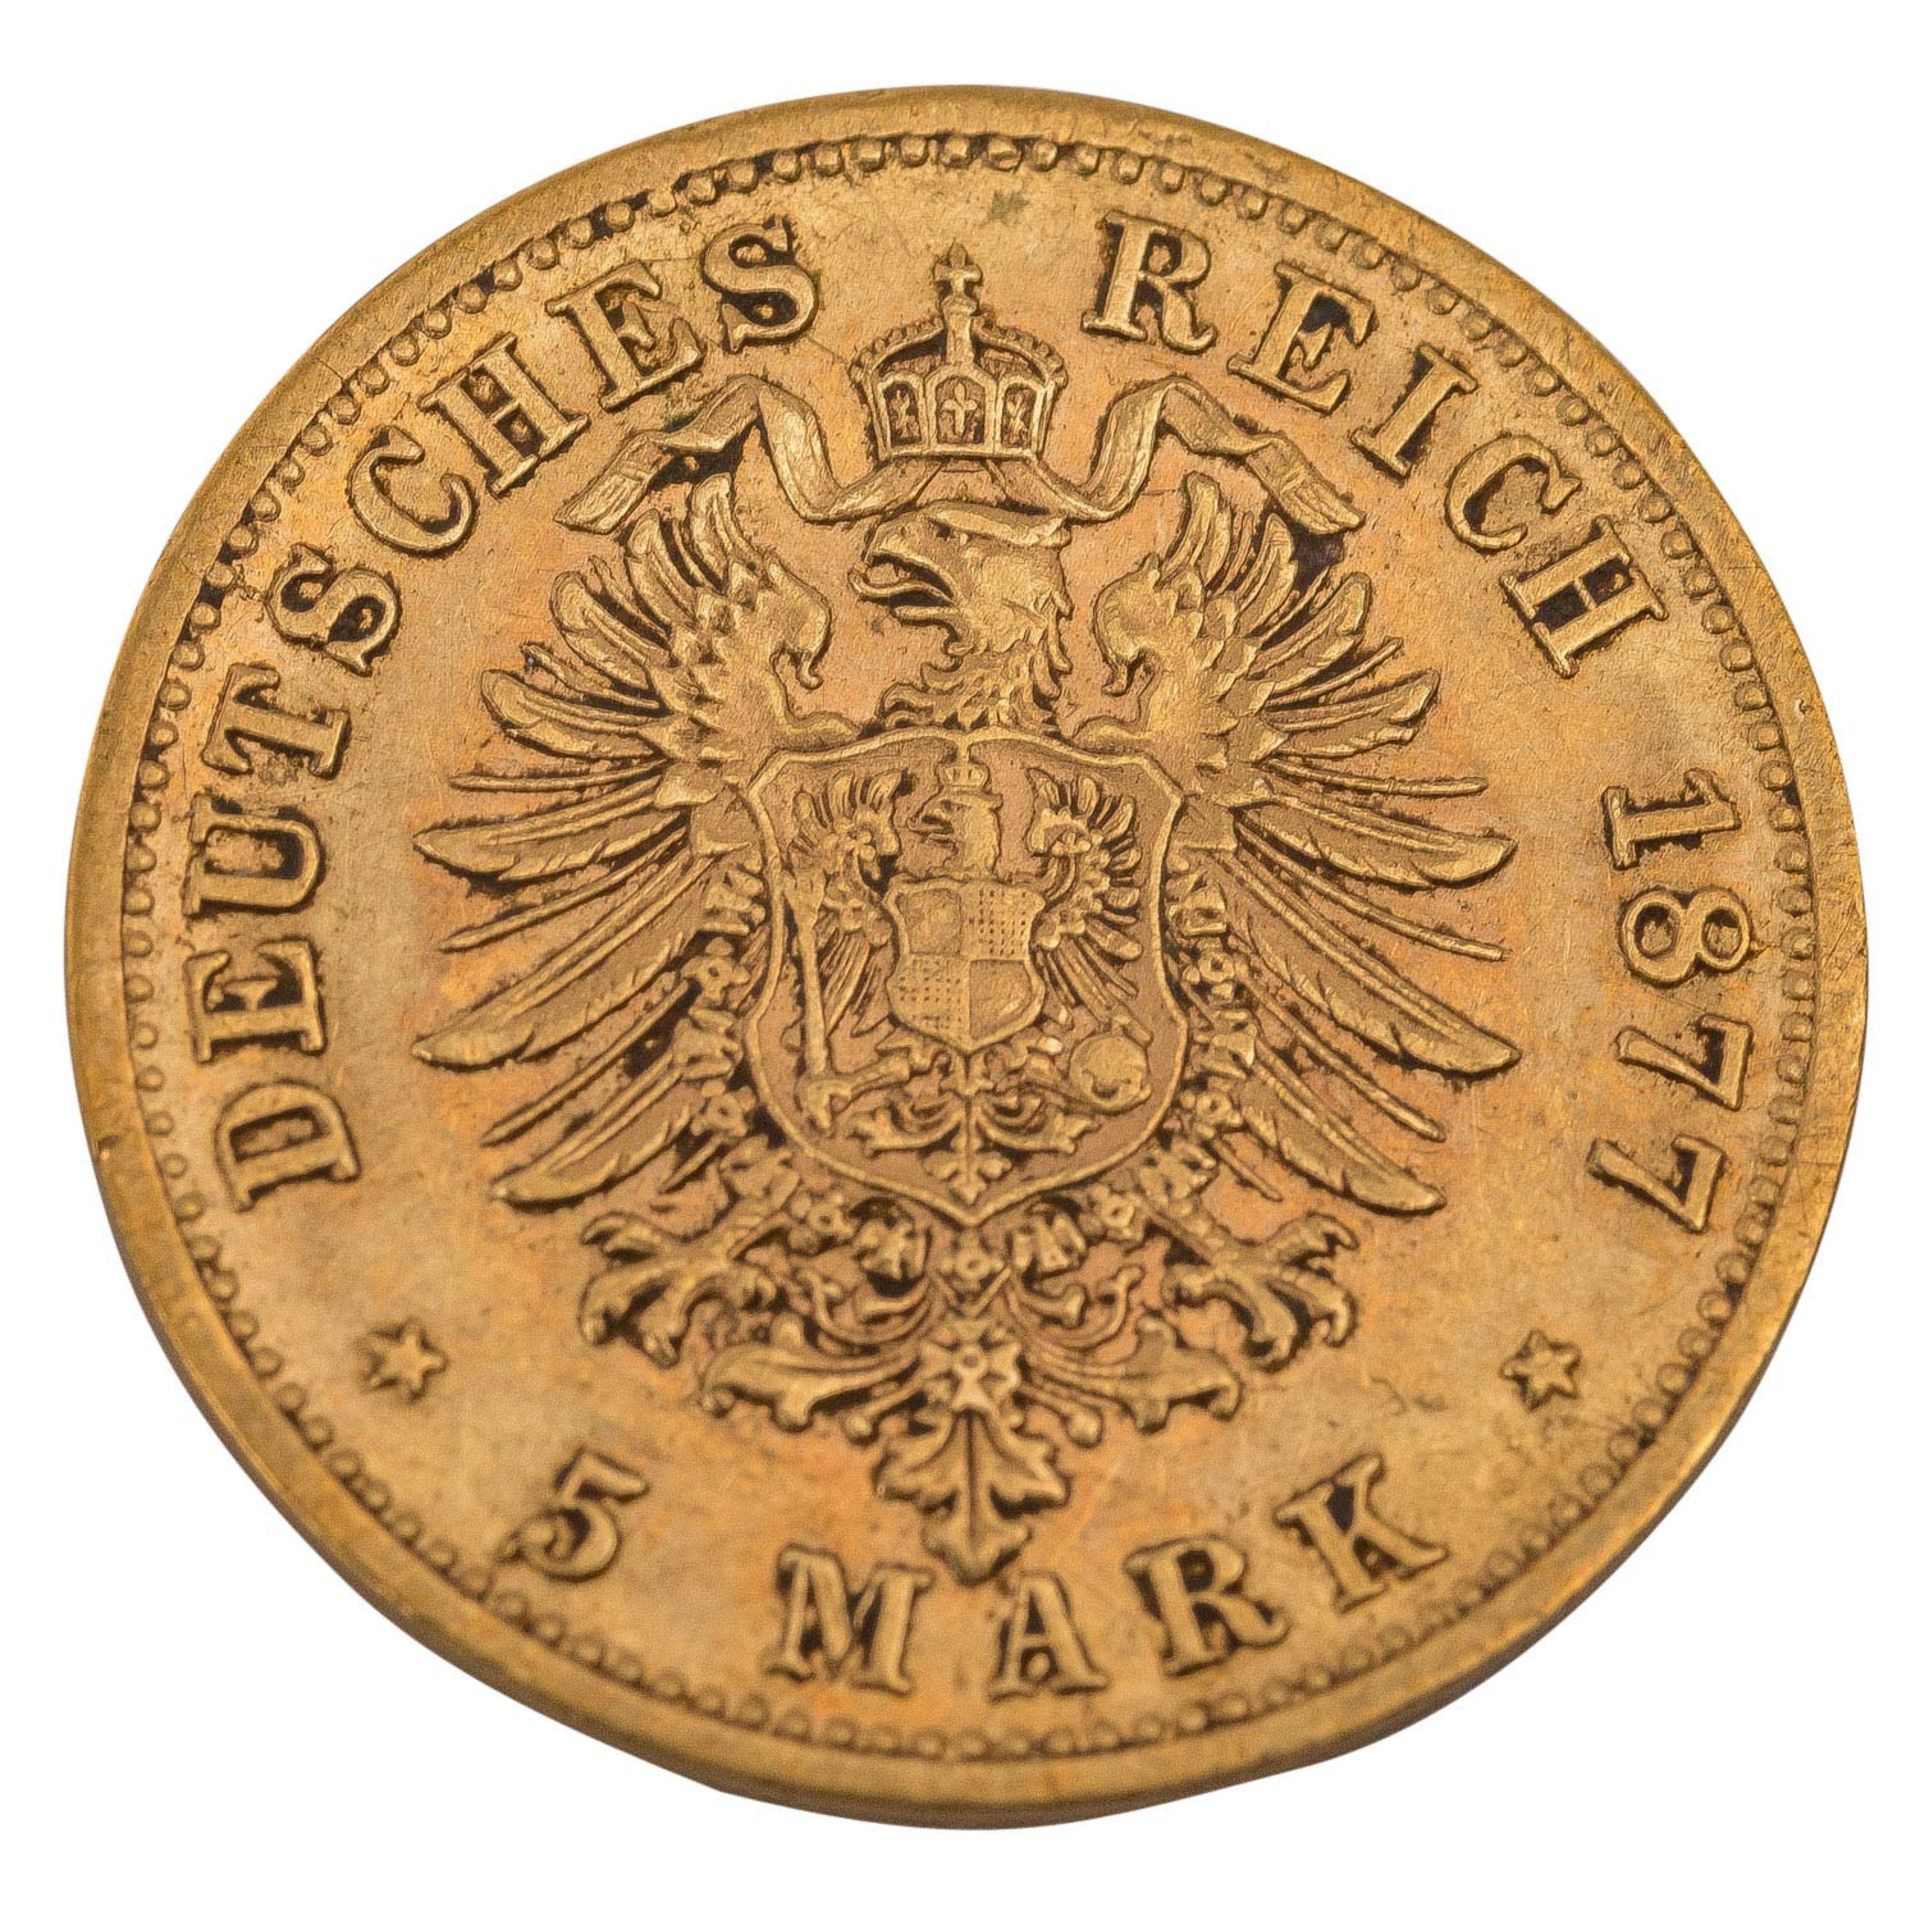 Württemberg/GOLD - 5 Mark 1877 F König Karl, - Image 2 of 2